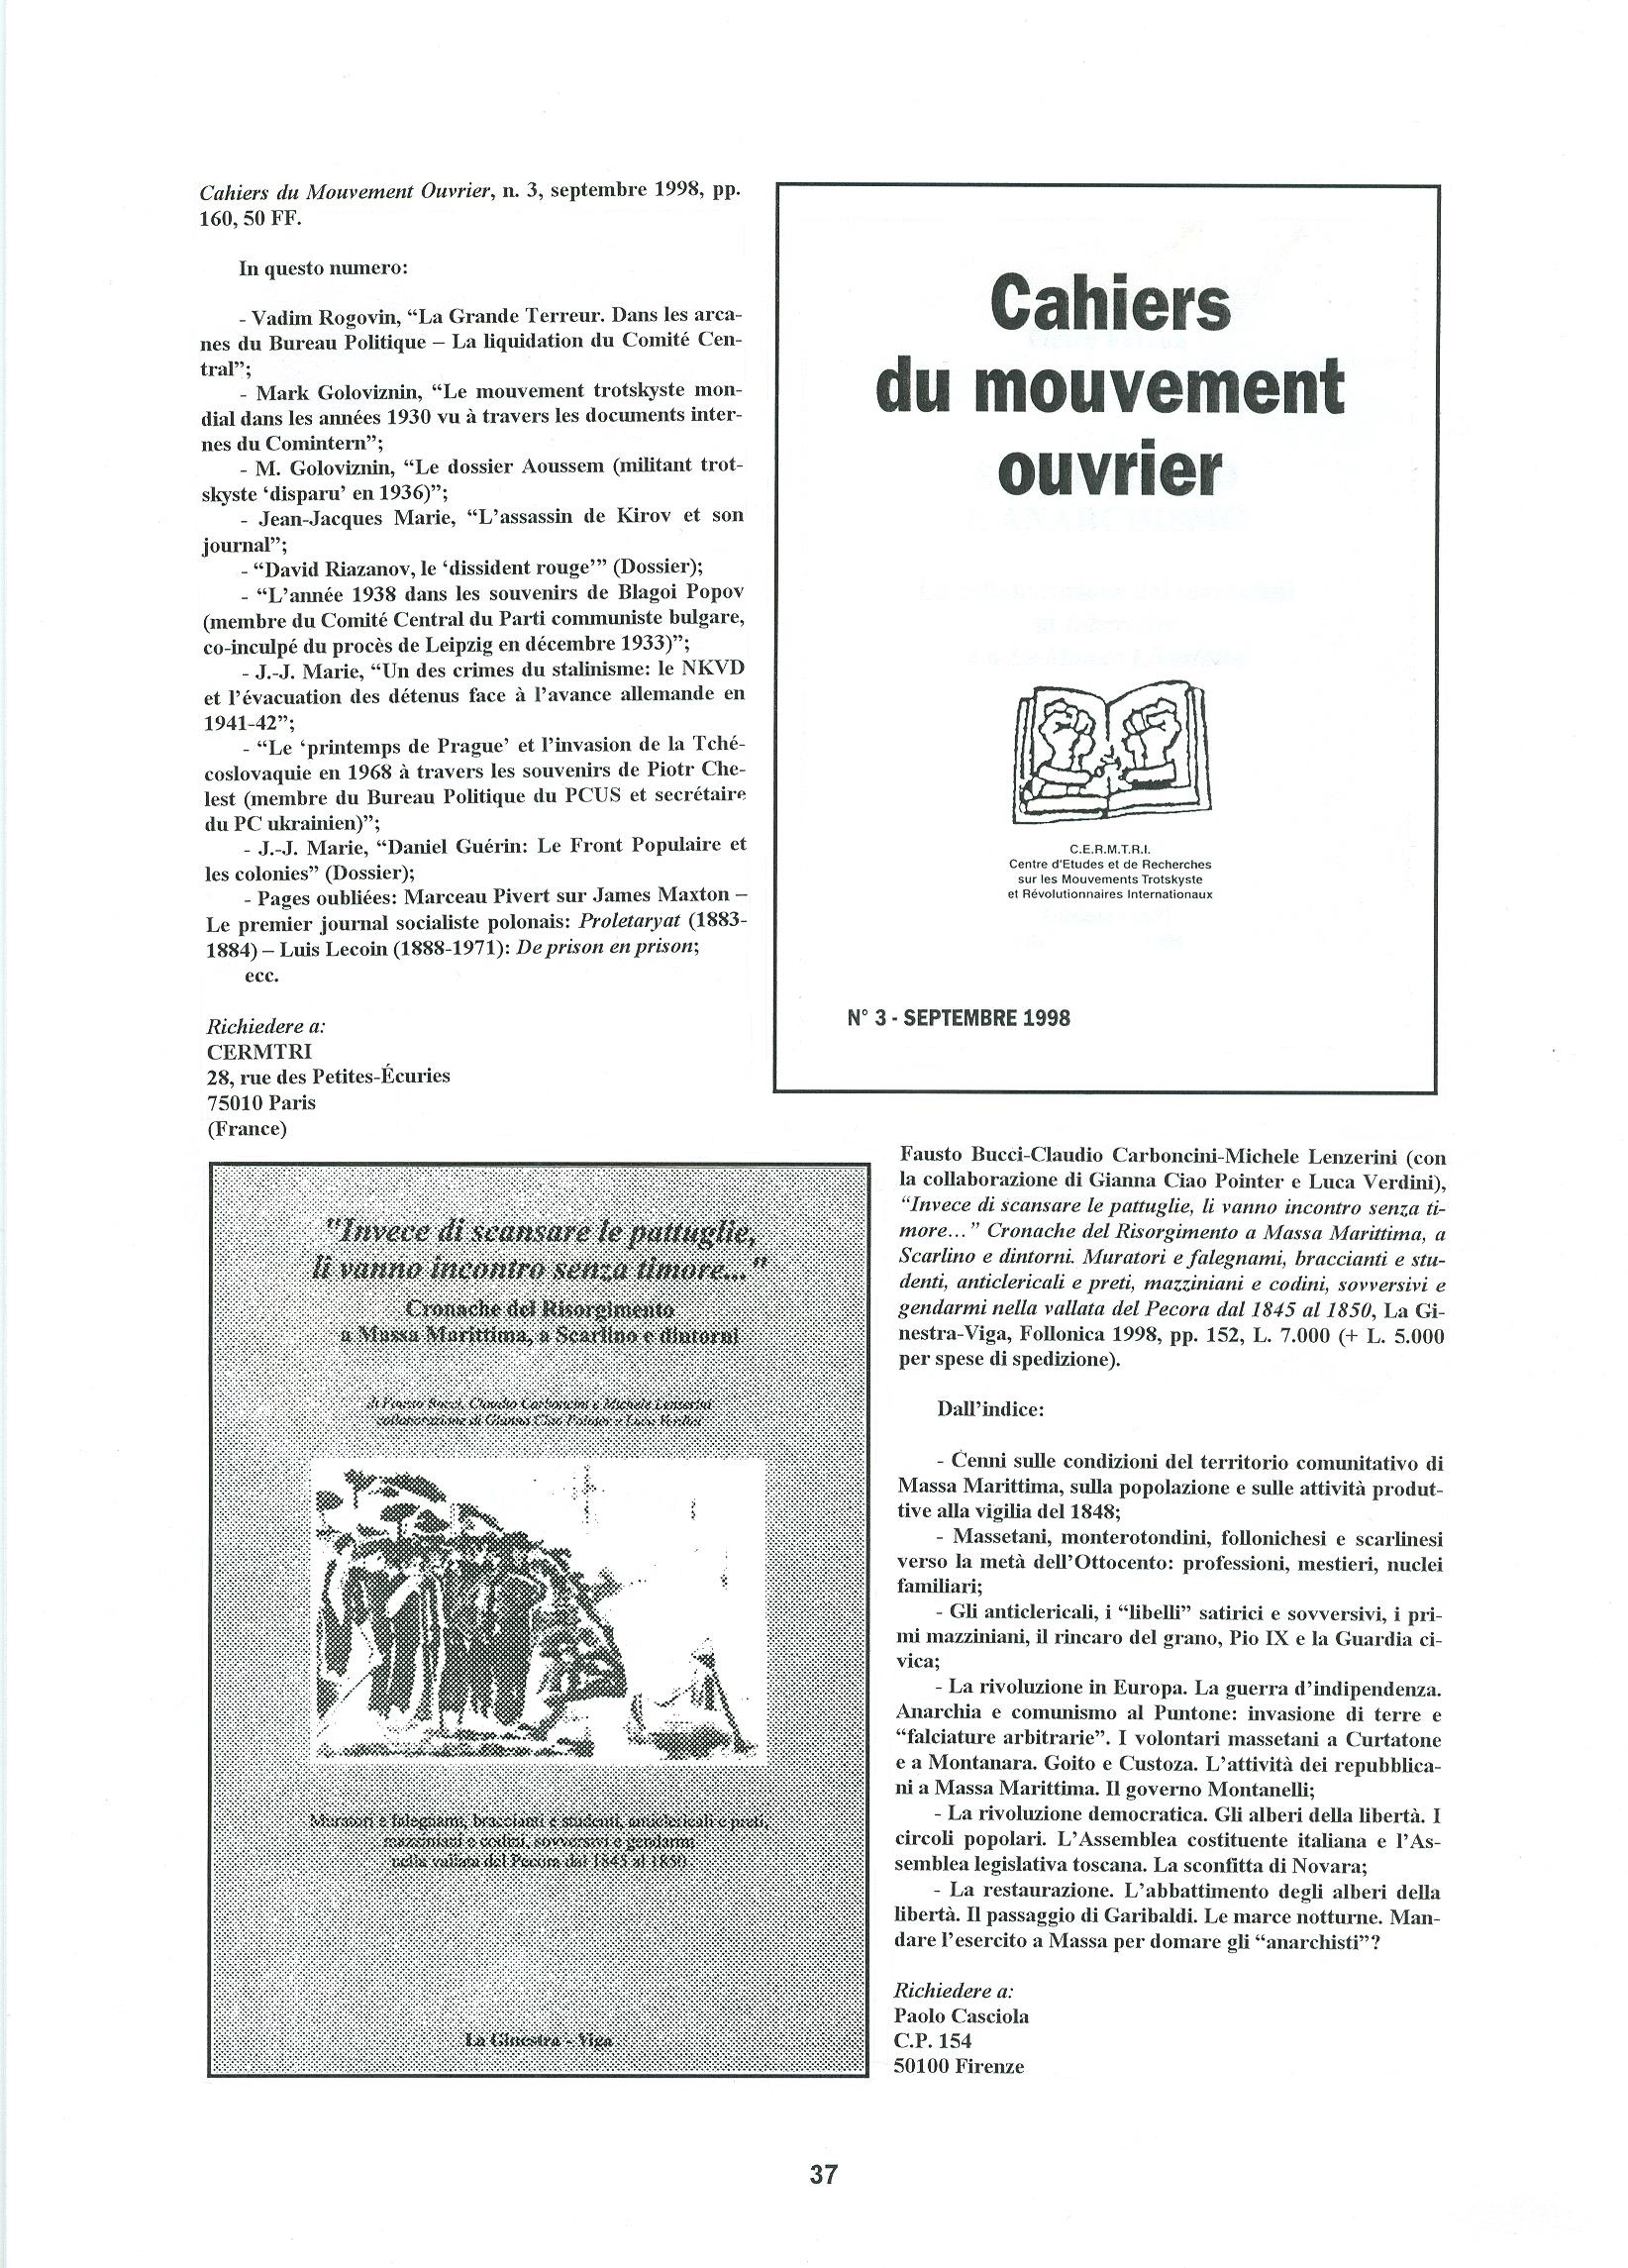 Quaderni del Centro Studi Pietro Tresso (1996-2009) n. 14 (novembre 1998) - pag. 38